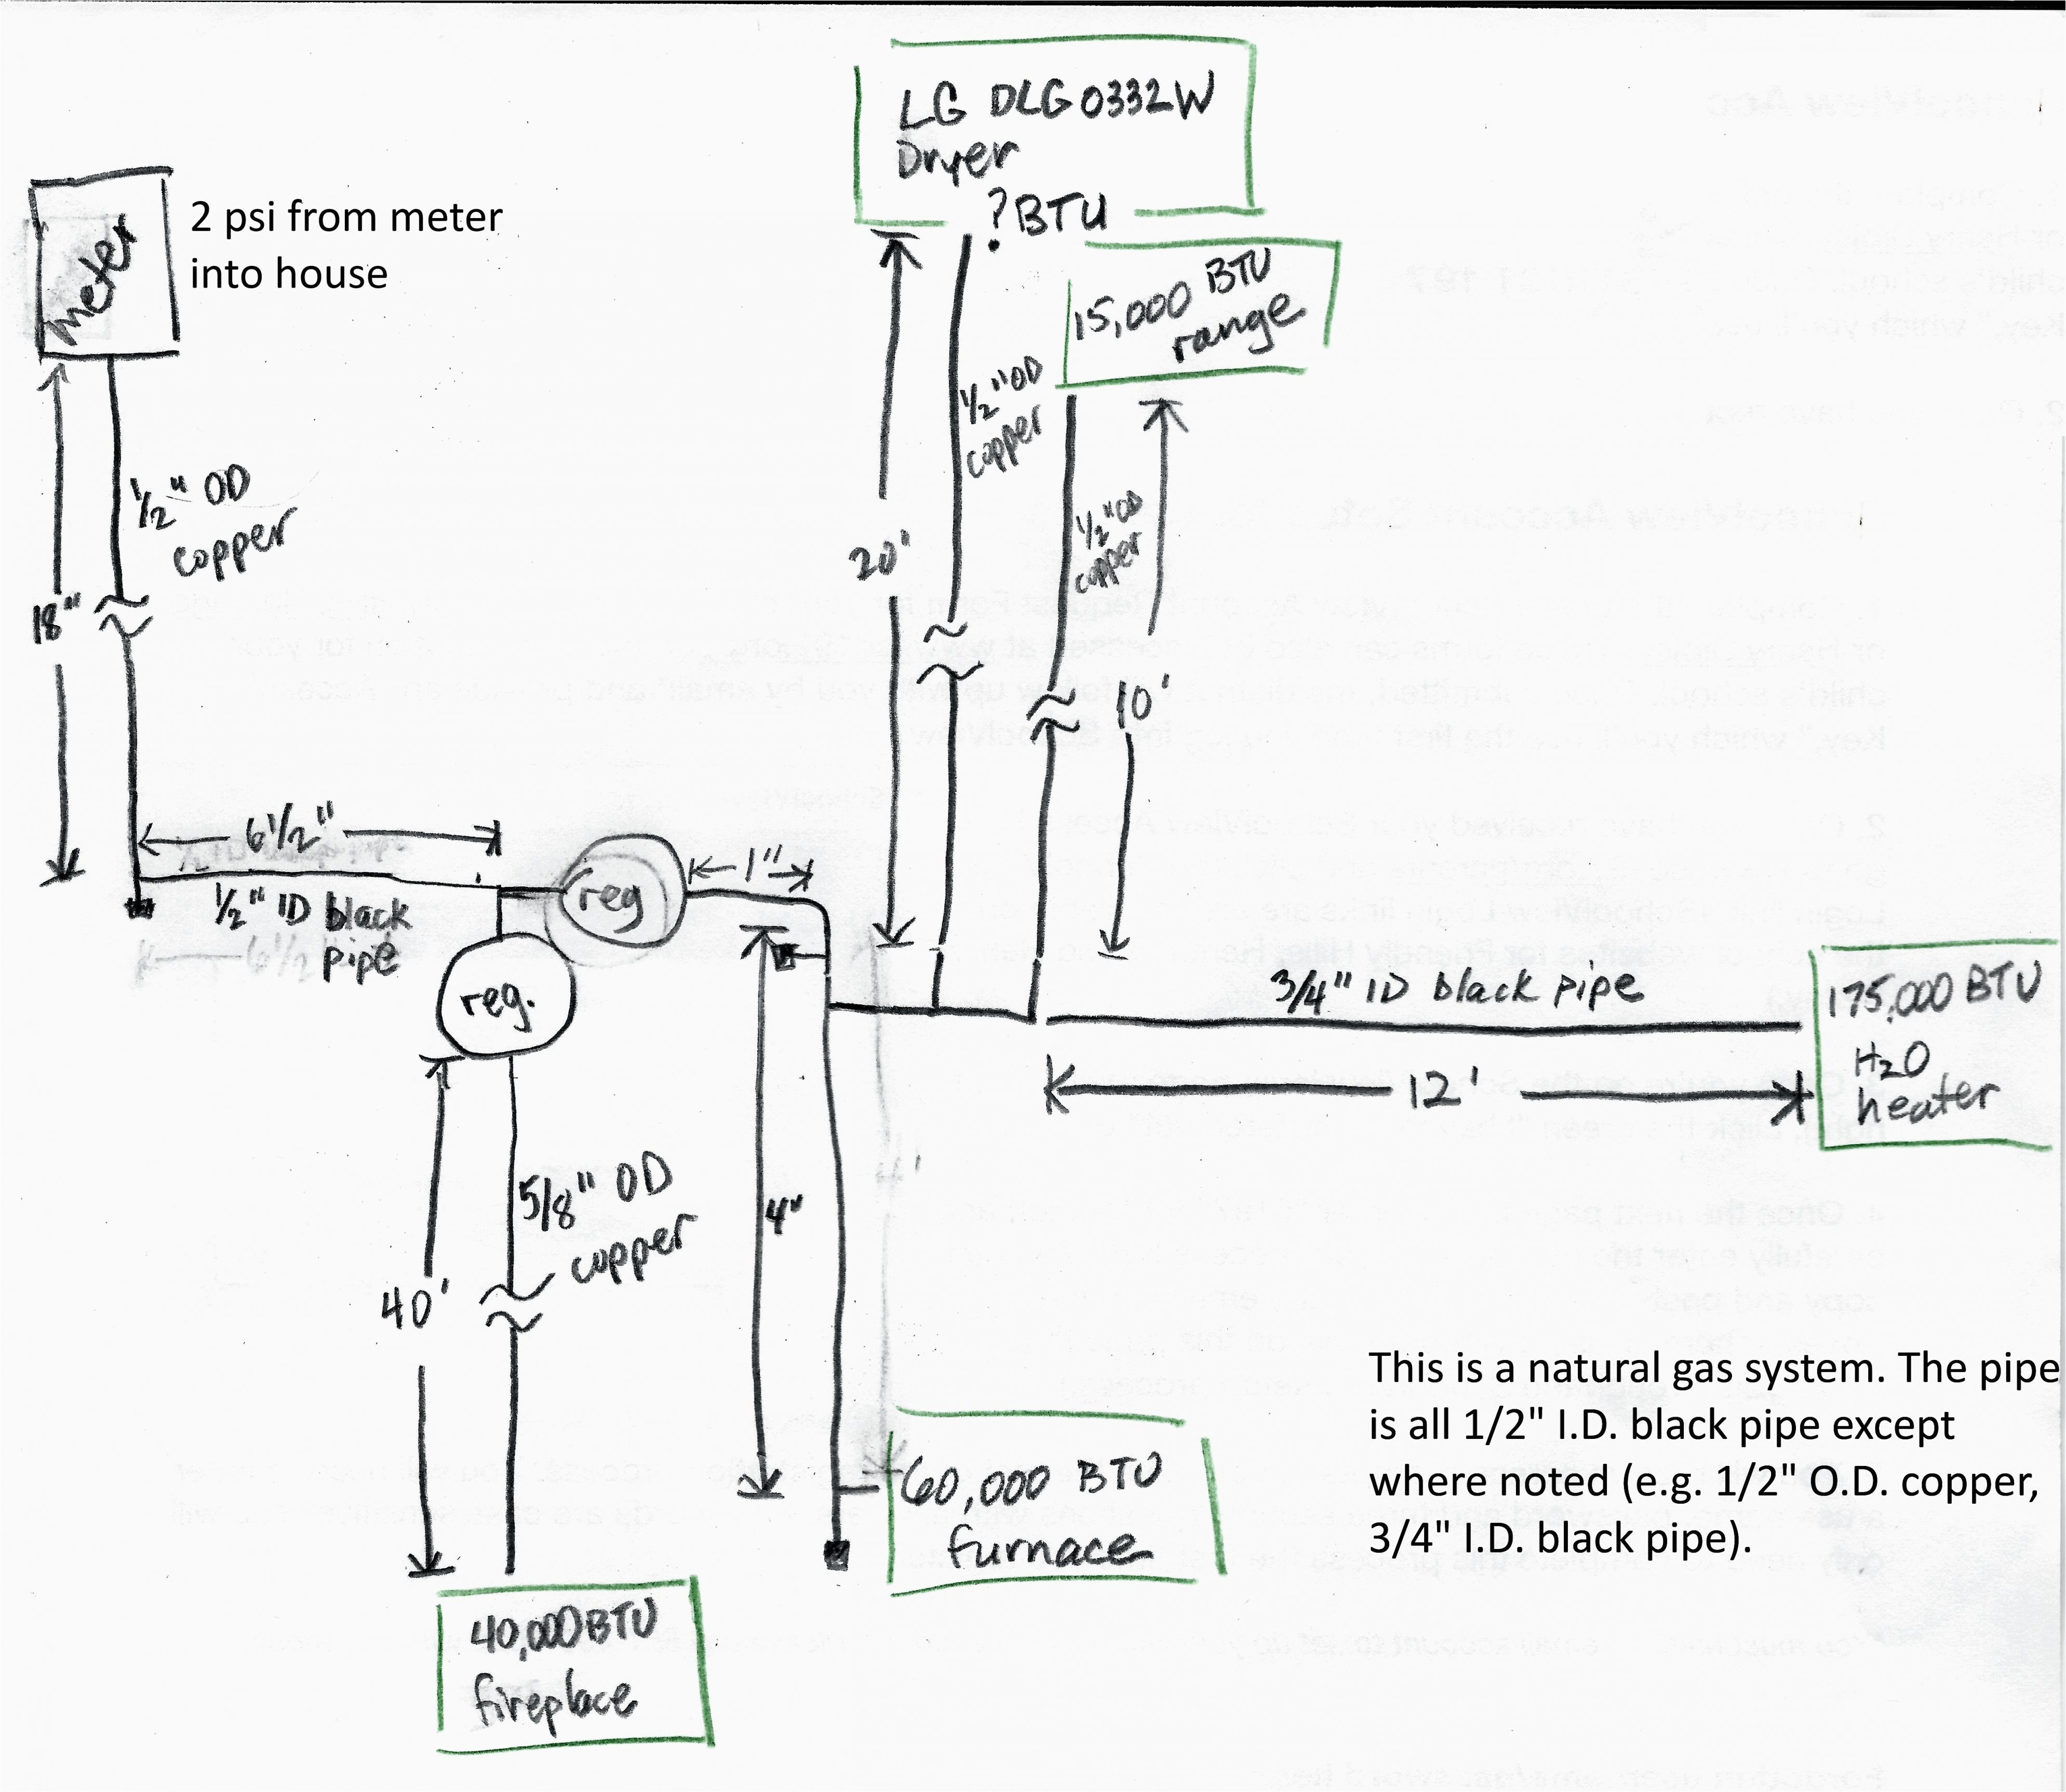 box wiring diagram wiring diagram expertwiring diagram for schematic box wiring diagram paper battery box wiring